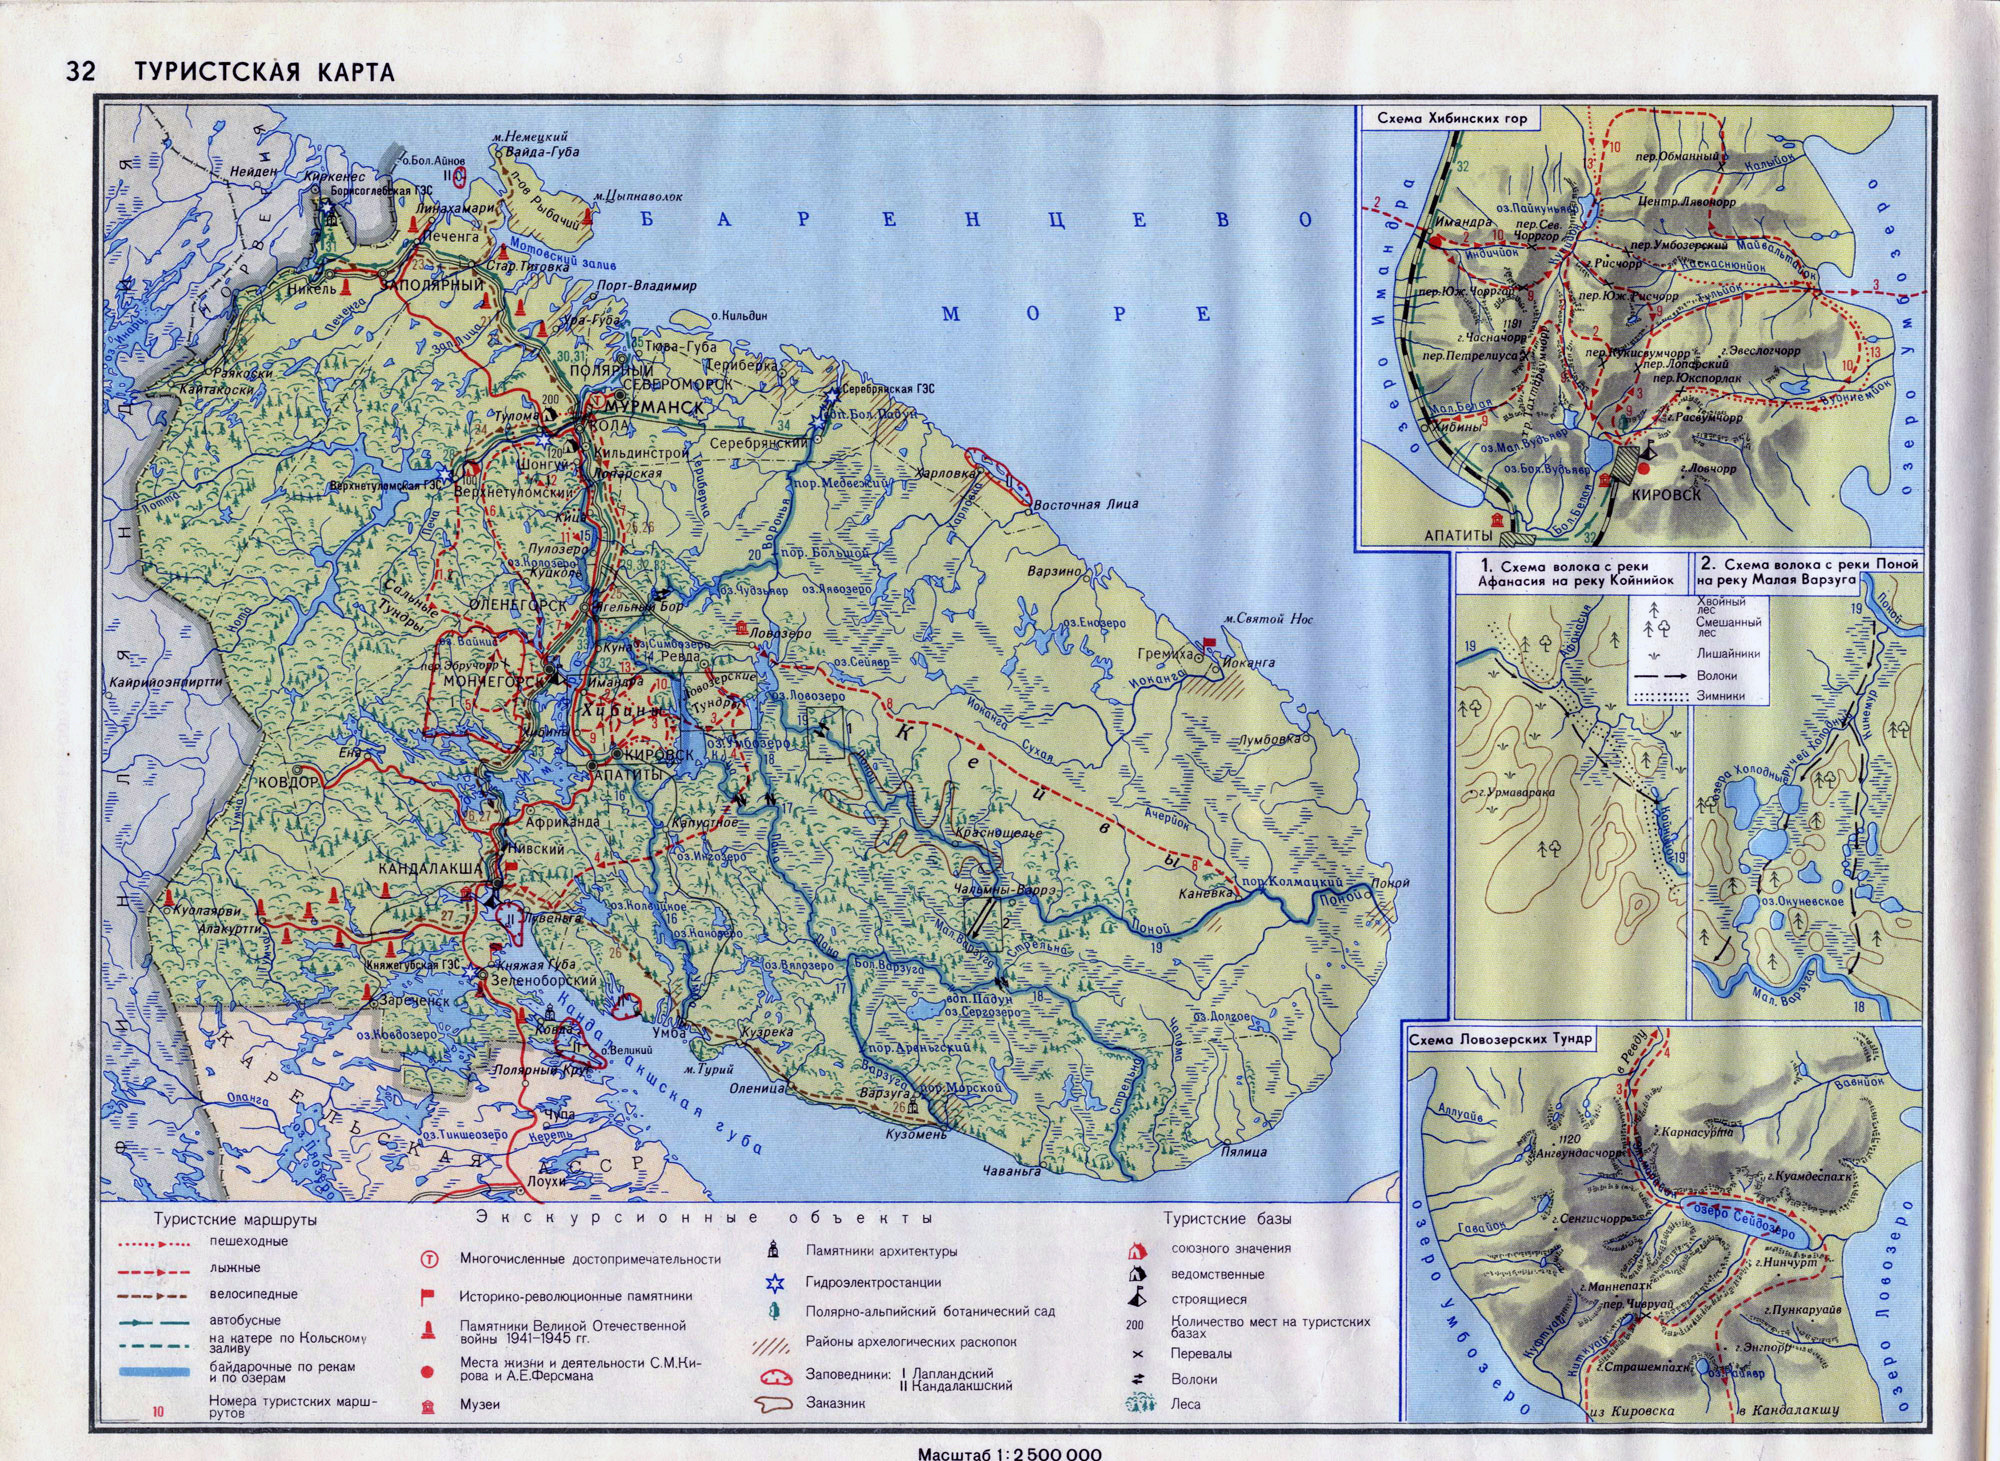 Большая подробная туристическая карта Мурманской области (Кольскогополуострова). Туристическая карта Мурманской области